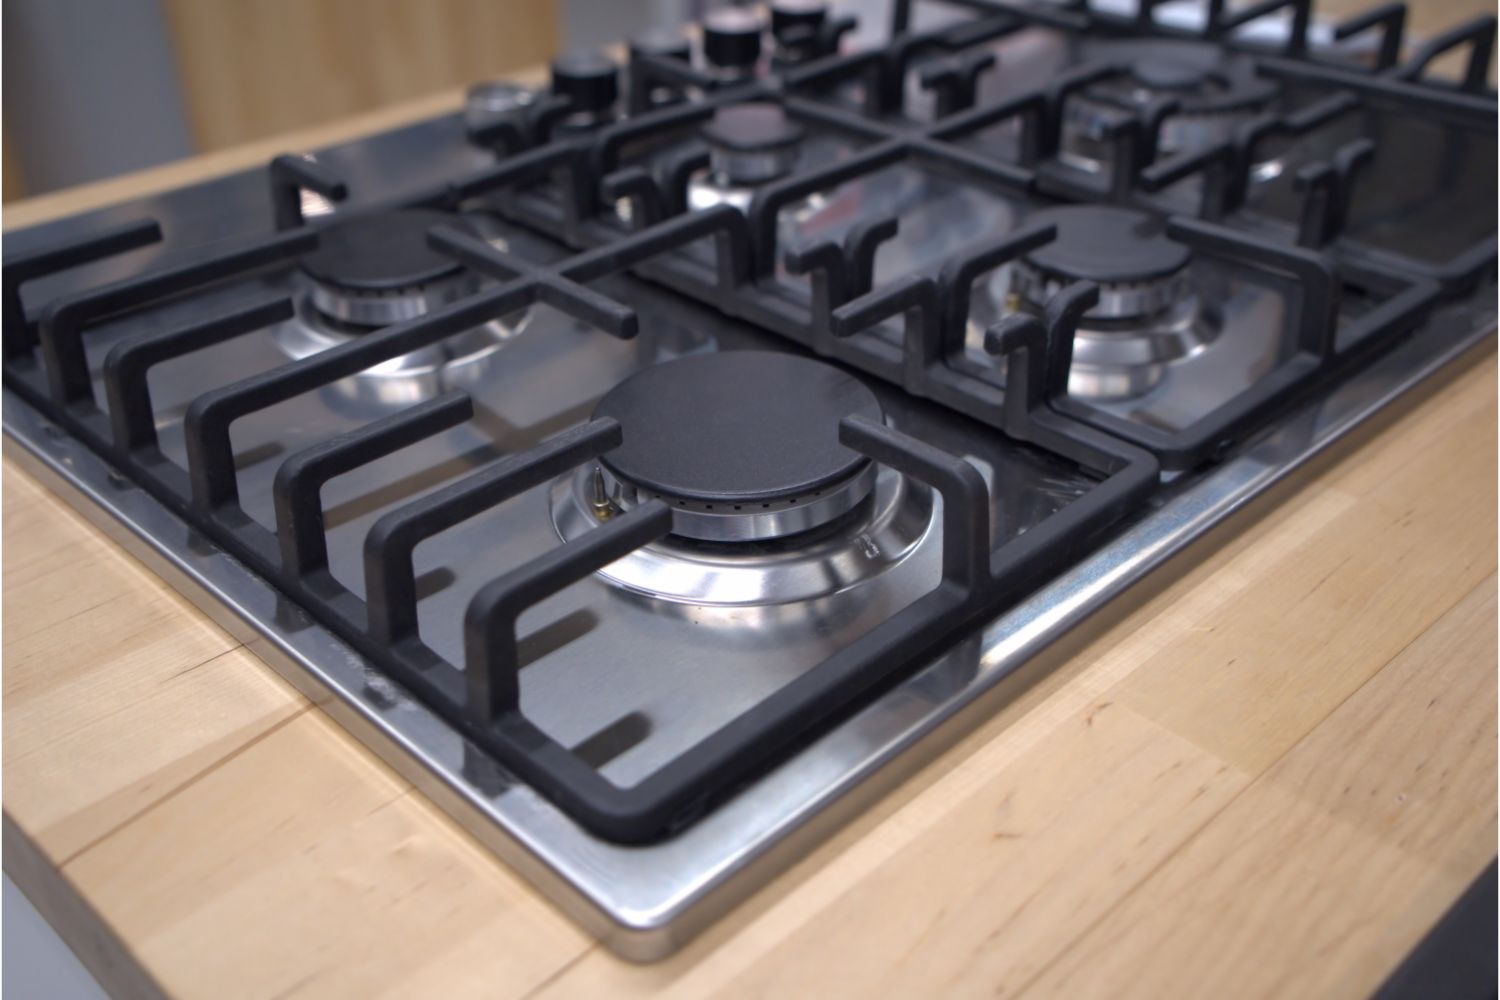 Aprenda o MÉTODO EFICAZ para limpar os queimadores do fogão: "brilhando como novos"